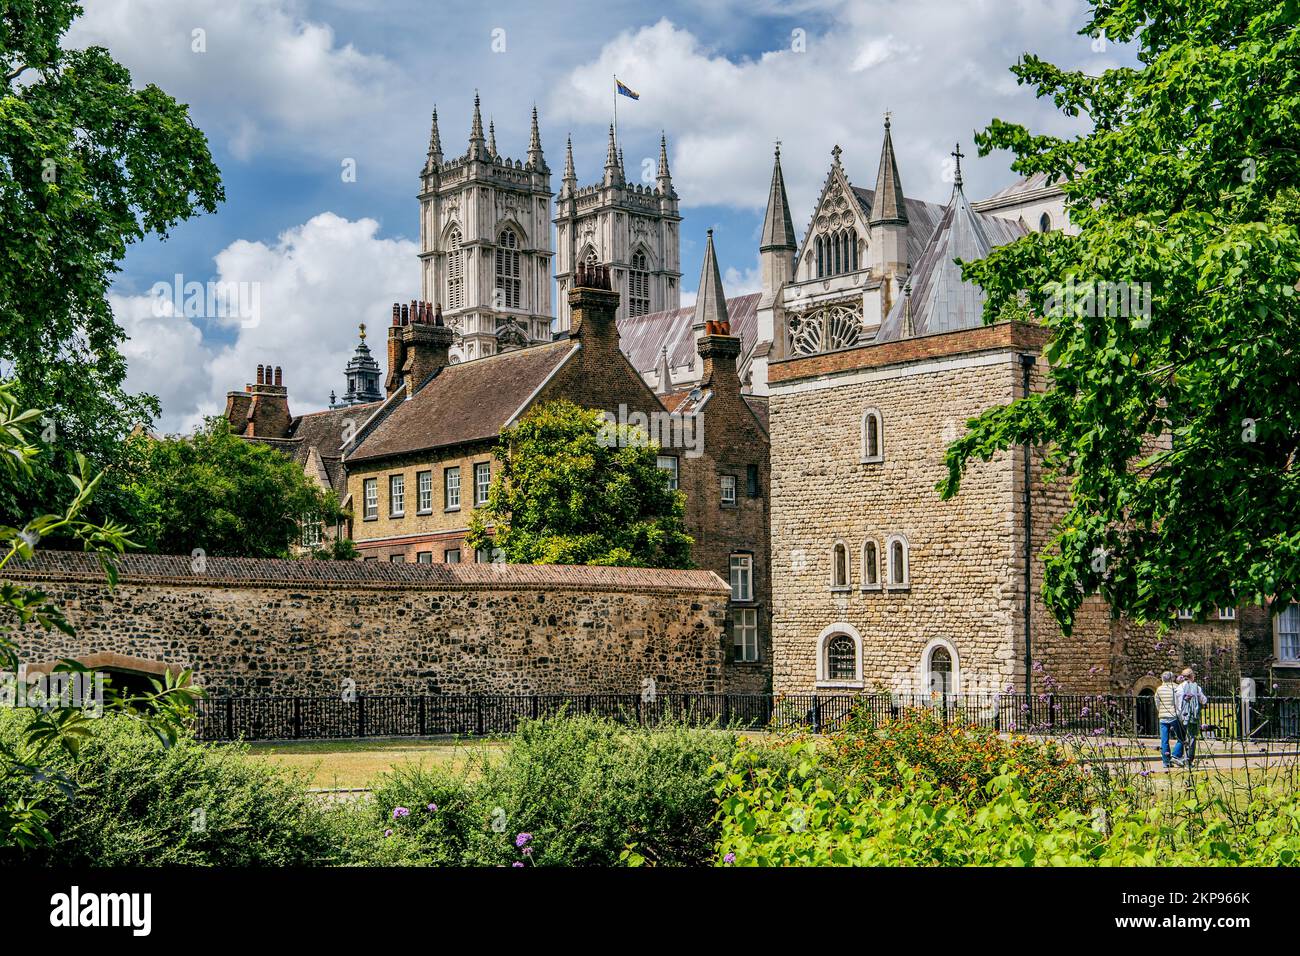 Maisons de la vieille ville et tours de la cathédrale de Westminster, Londres, ville de Londres, Angleterre, Royaume-Uni, Grande-Bretagne, Europe Banque D'Images